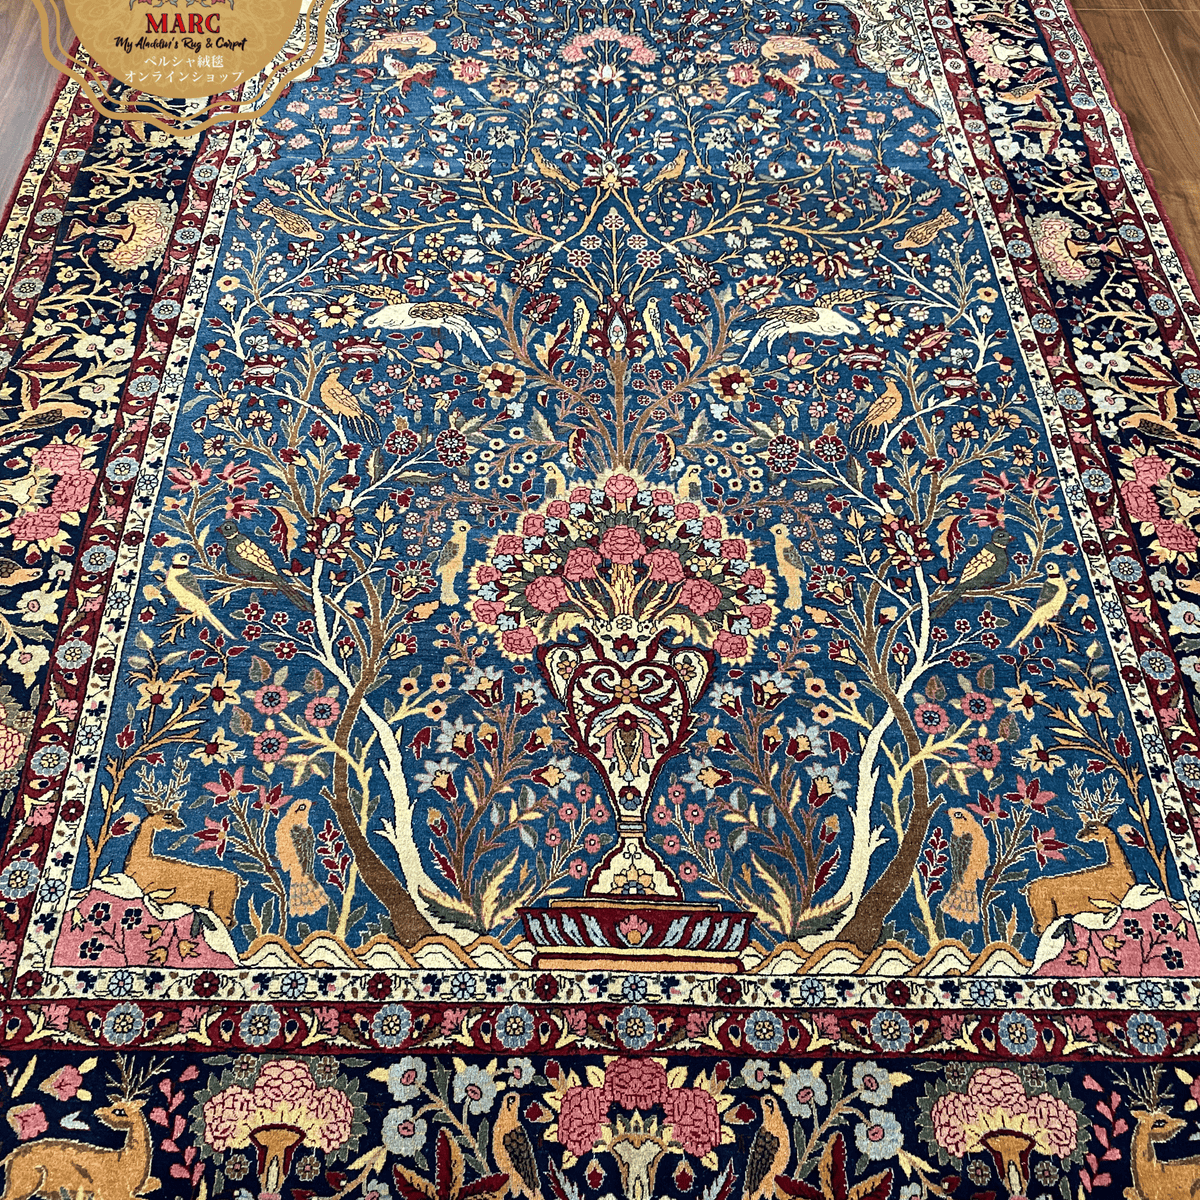 アンティーク テヘラン産 ペルシャ絨毯 316×202cm– MARC My Aladdin's Rug u0026 Carpet